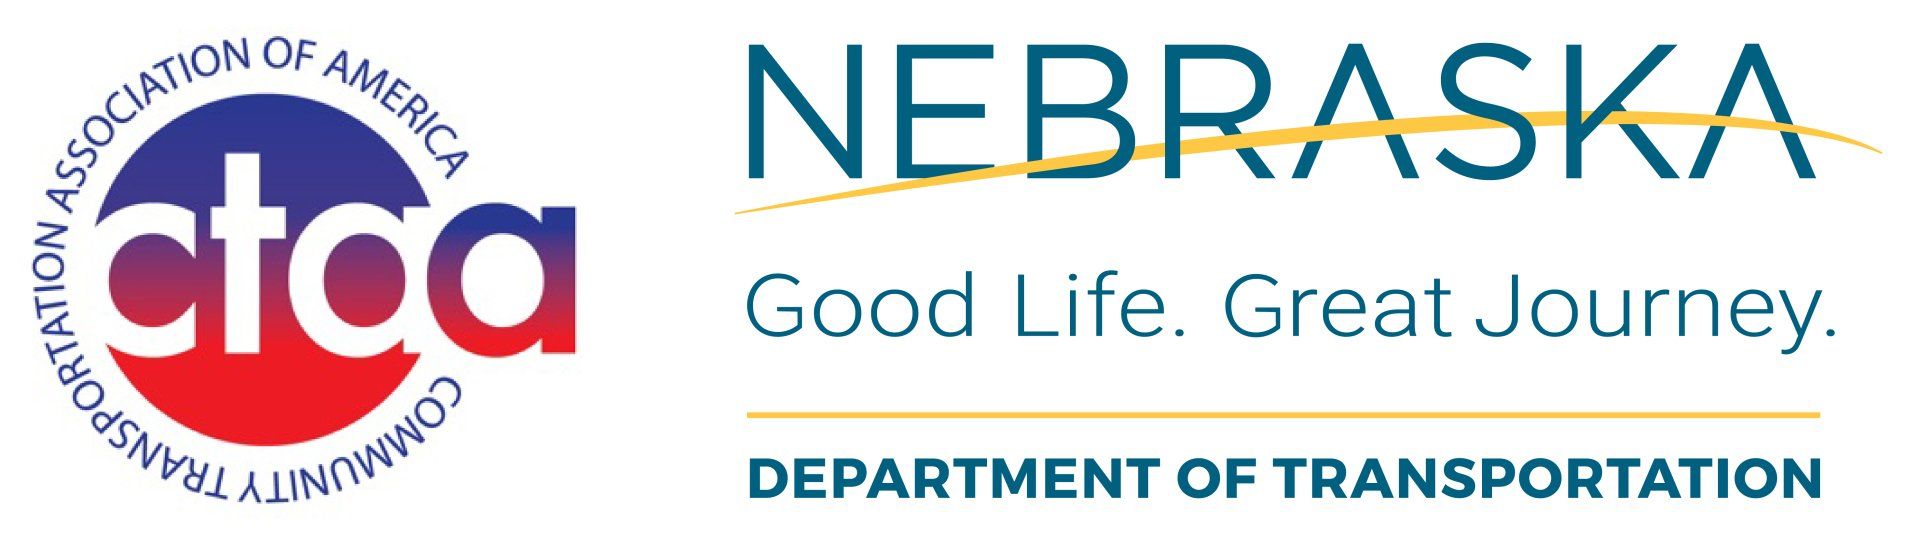 Community Transportation Association of America and Nebraska Department of Transportation logos